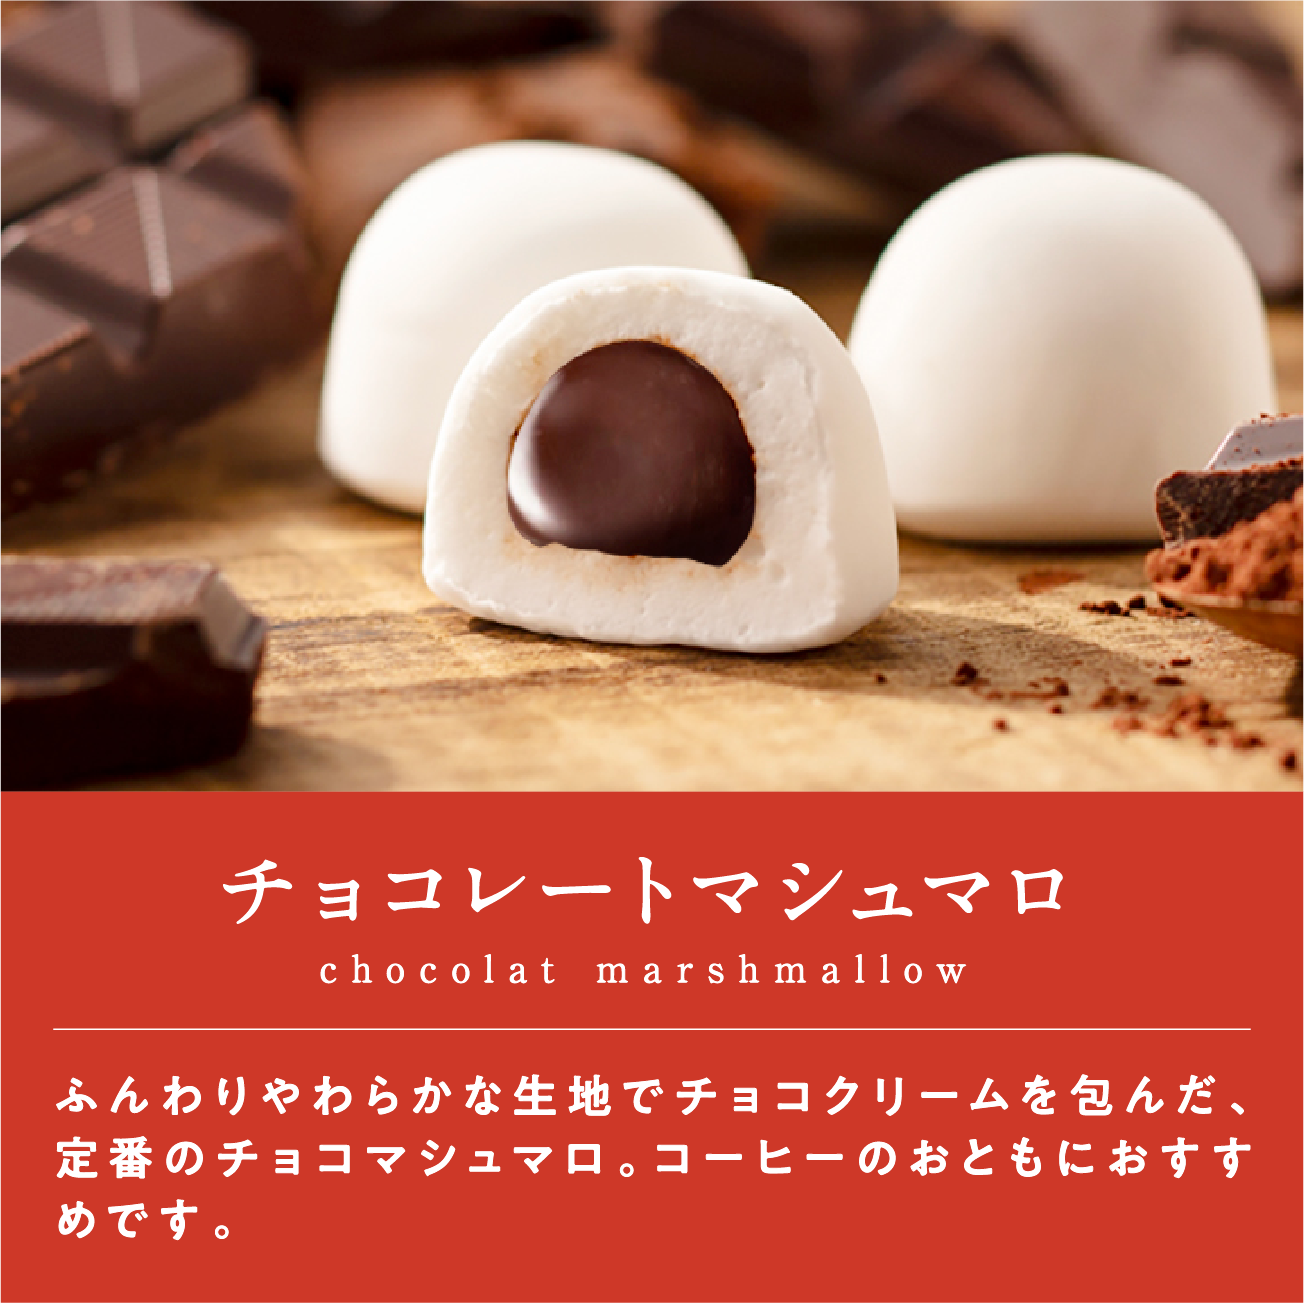 チョコレートマシュマロ ふんわりやわらかな生地でチョコクリームを包んだ、定番のチョコマシュマロ。コーヒーのおともにおすすめです。